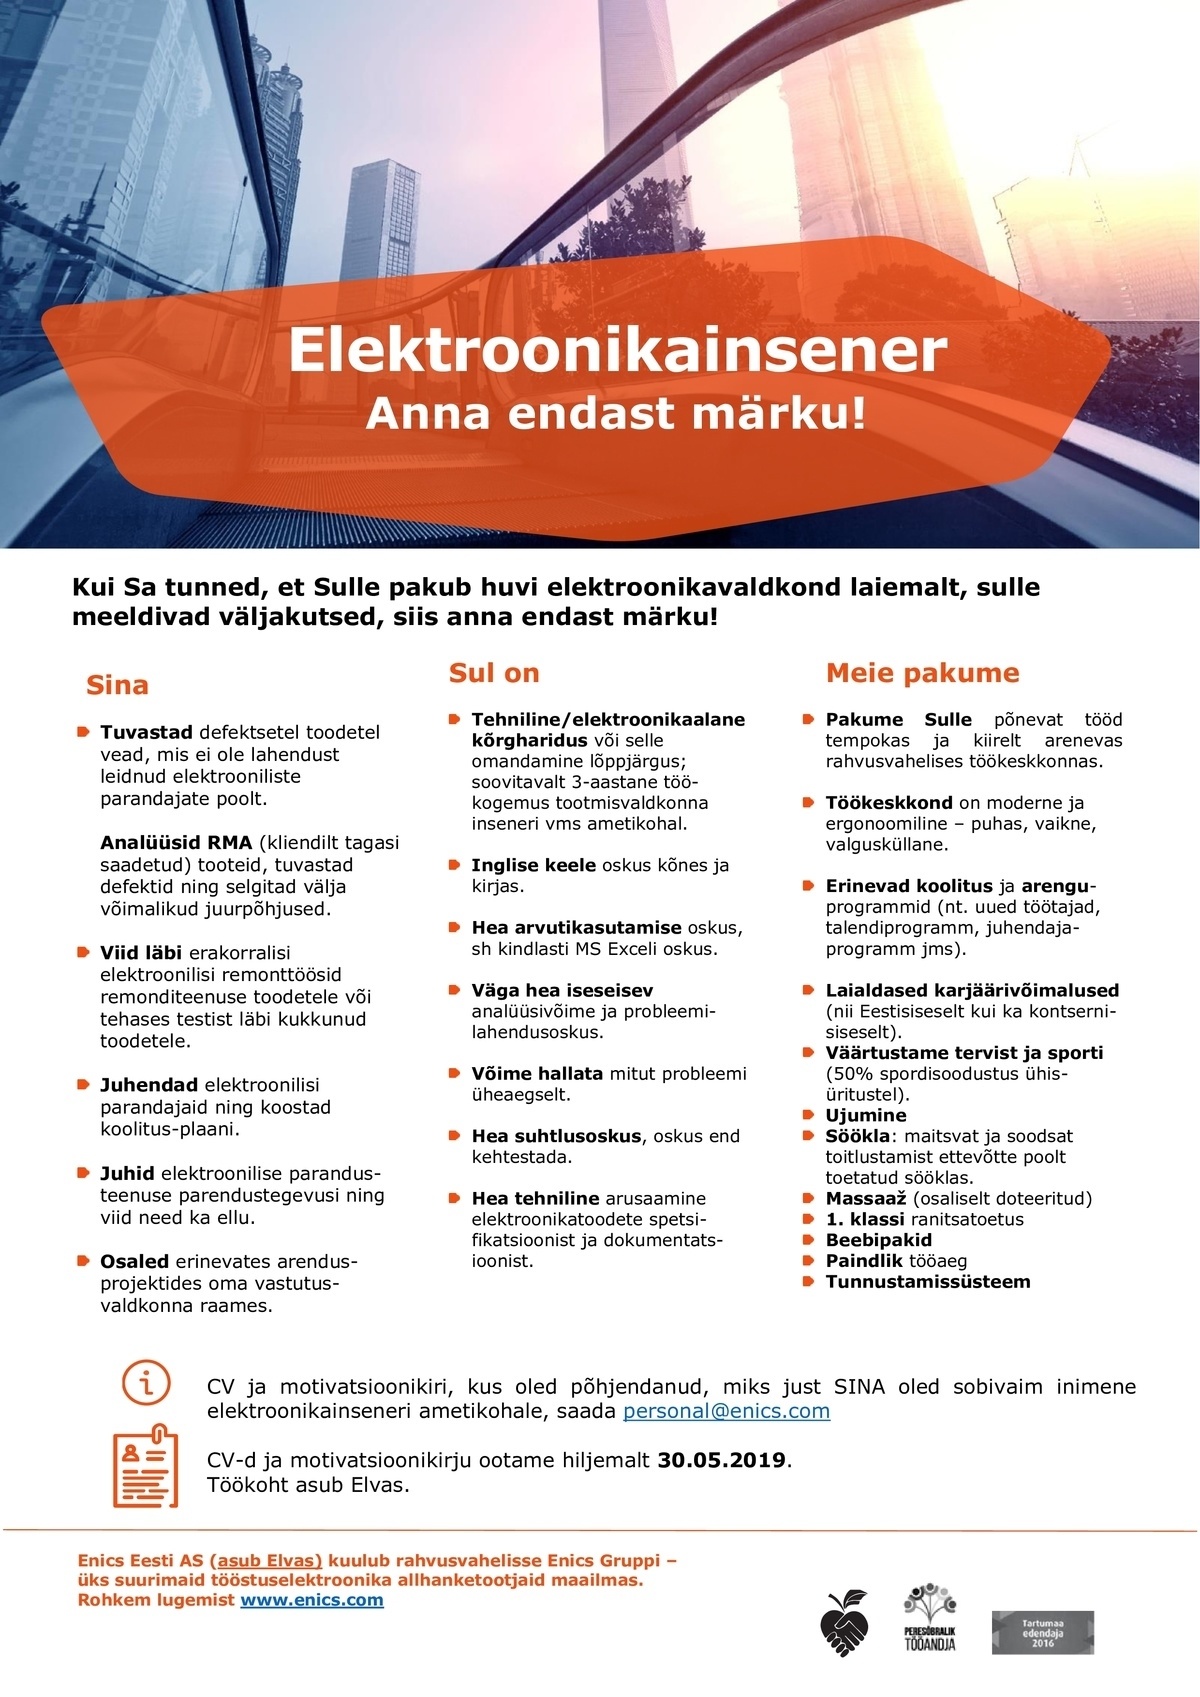 Enics Eesti AS Eletroonikainsener